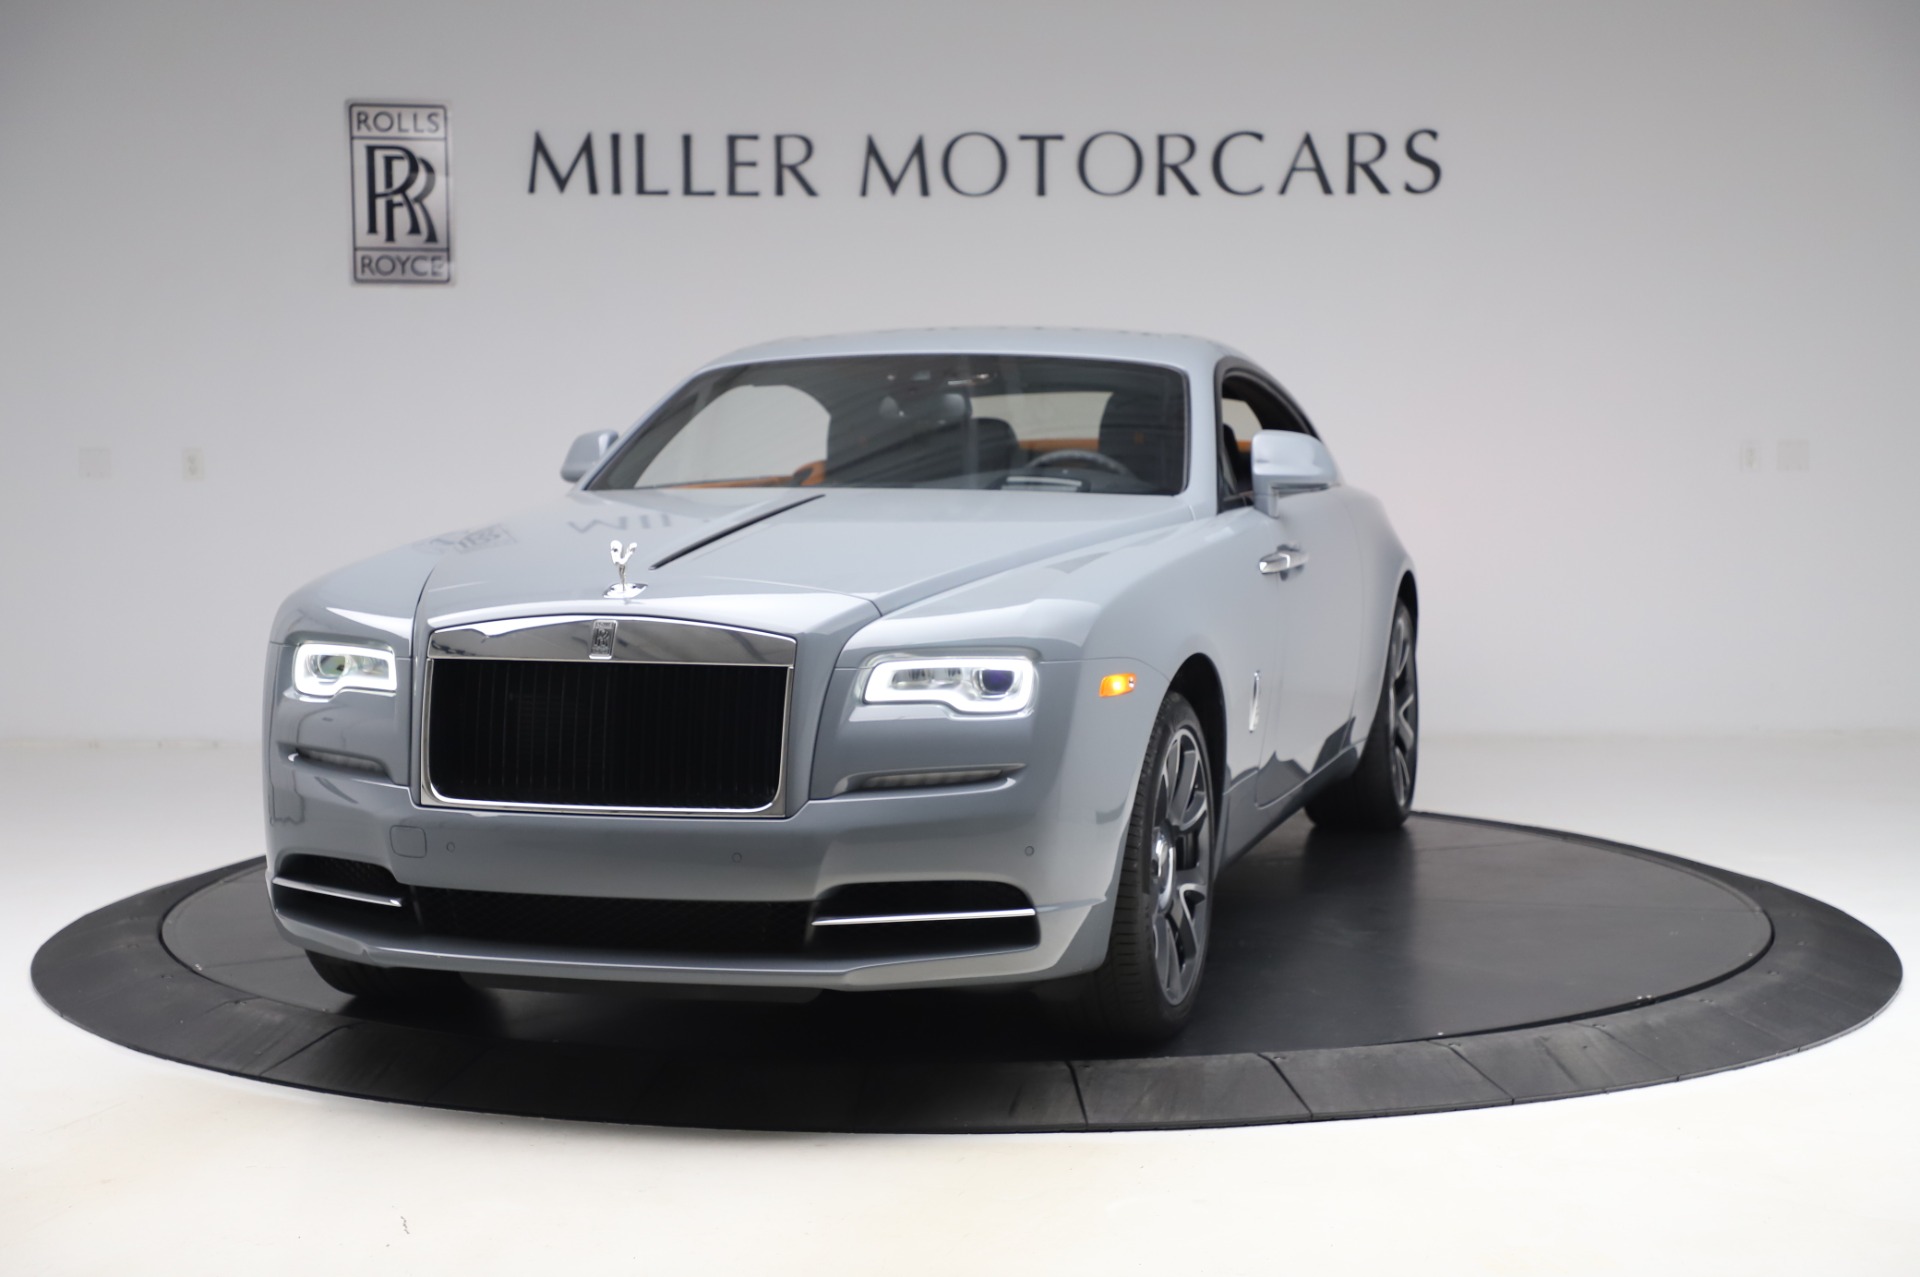 New 2020 RollsRoyce Wraith For Sale   Miller Motorcars Stock R569